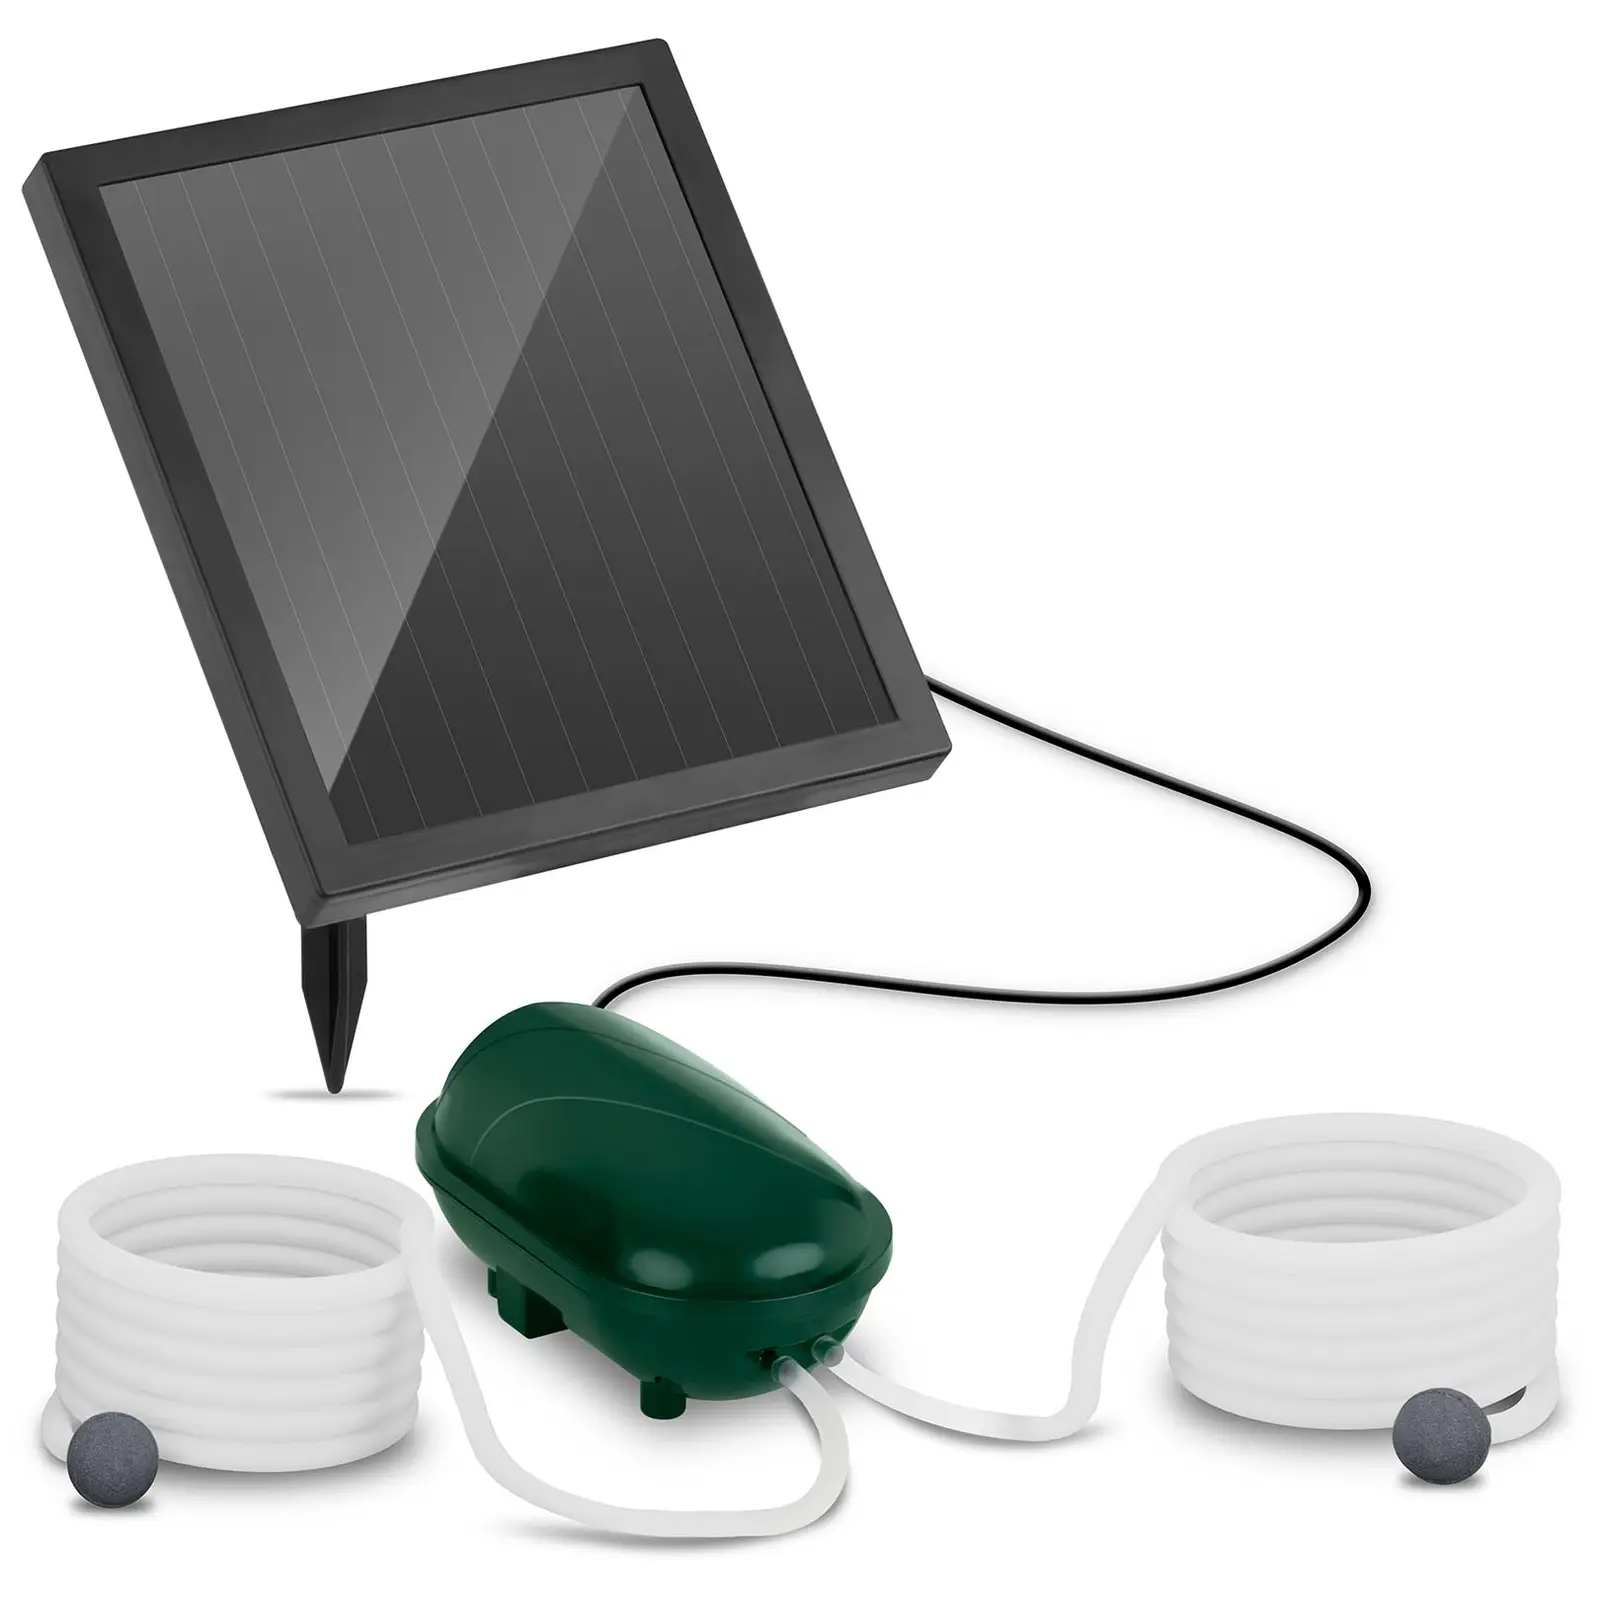 Pompa laghetto solare - 2 pietre - 200 l / h - batteria